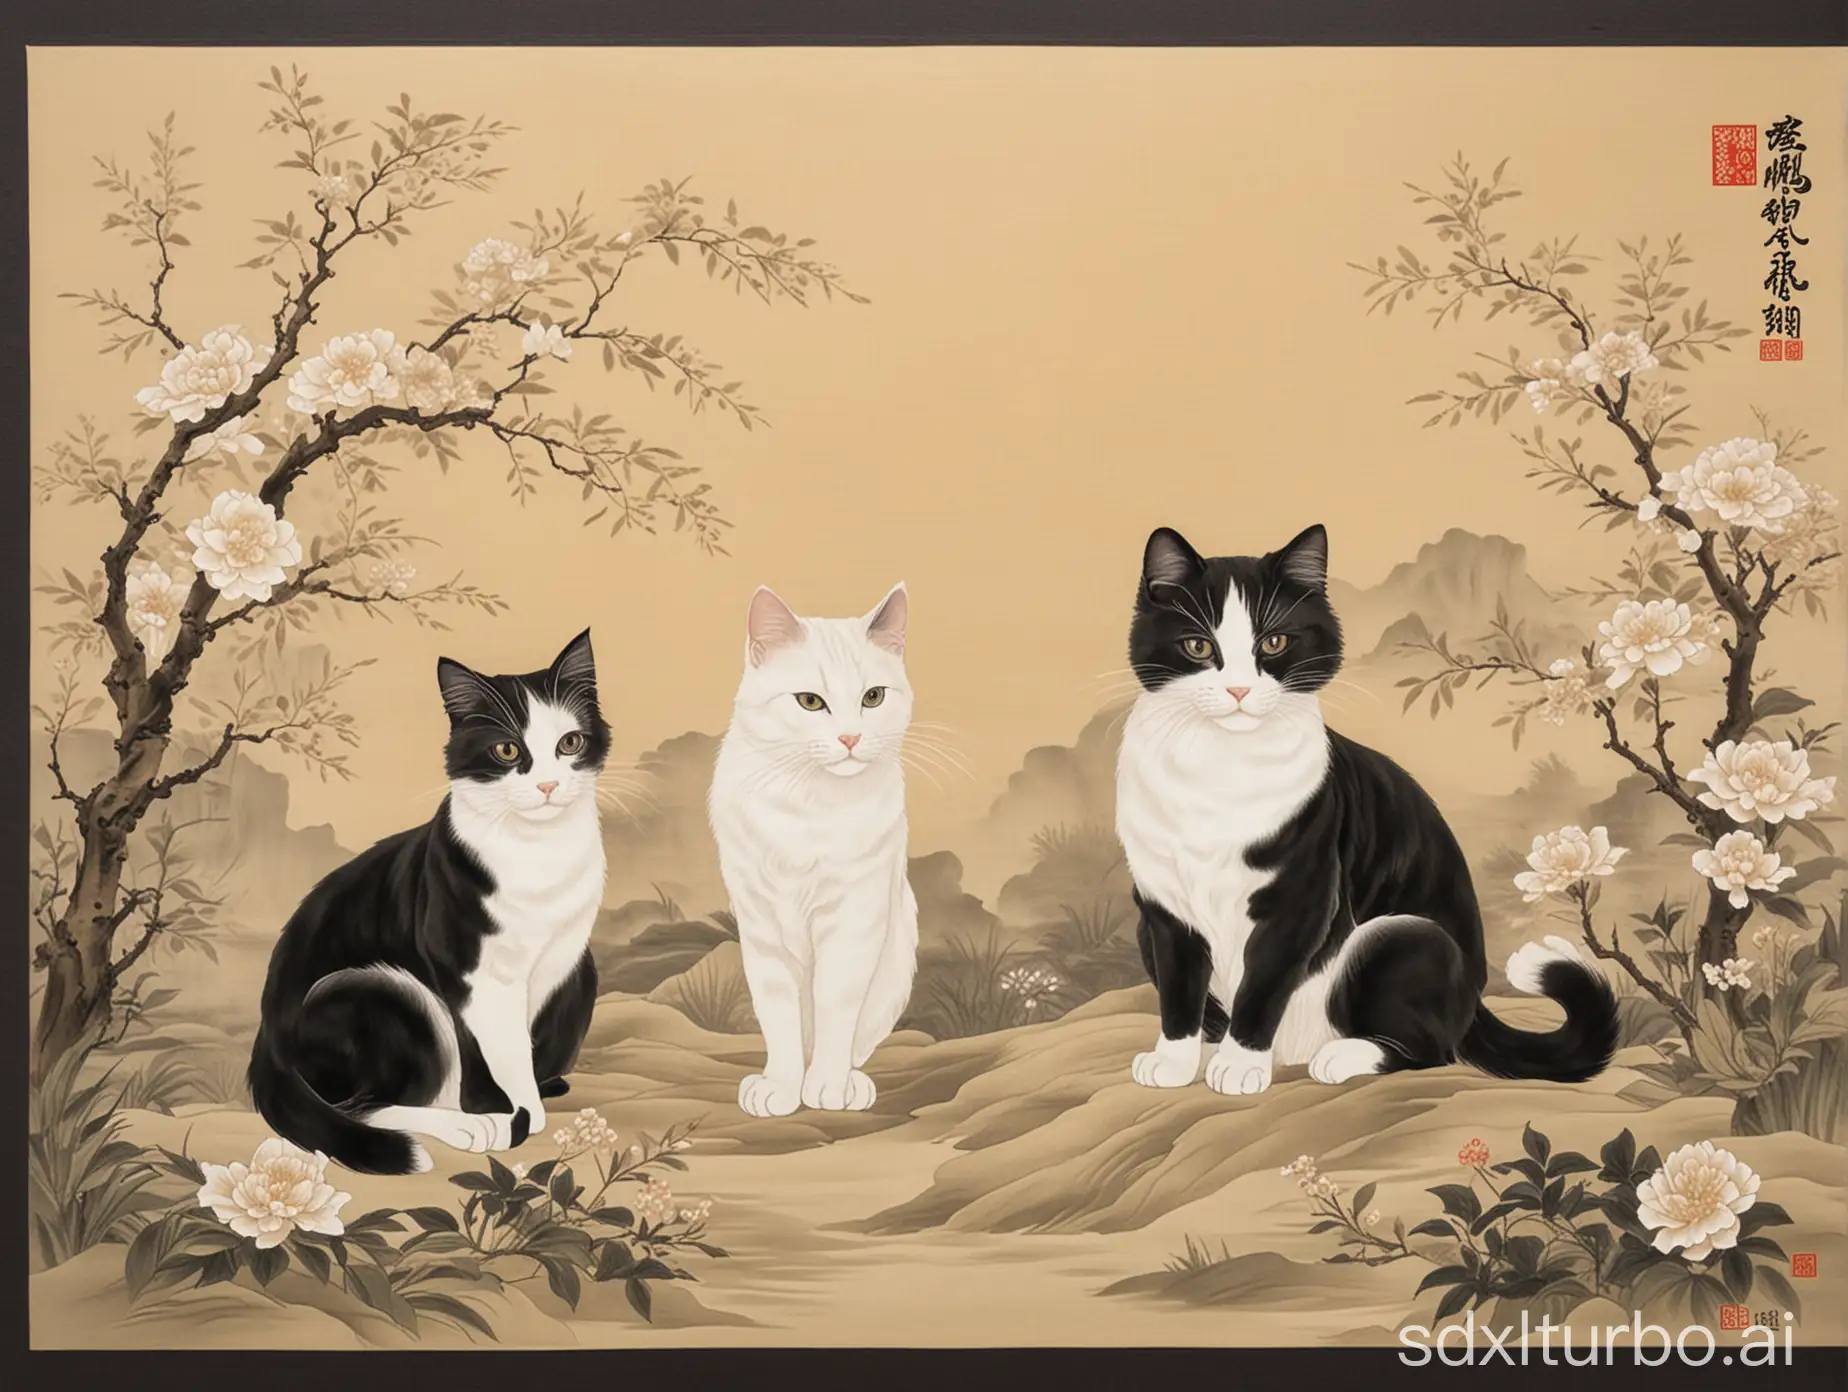 创建 1 个宣纸面板的图像，2只明朝时期风格的黑白相间猫